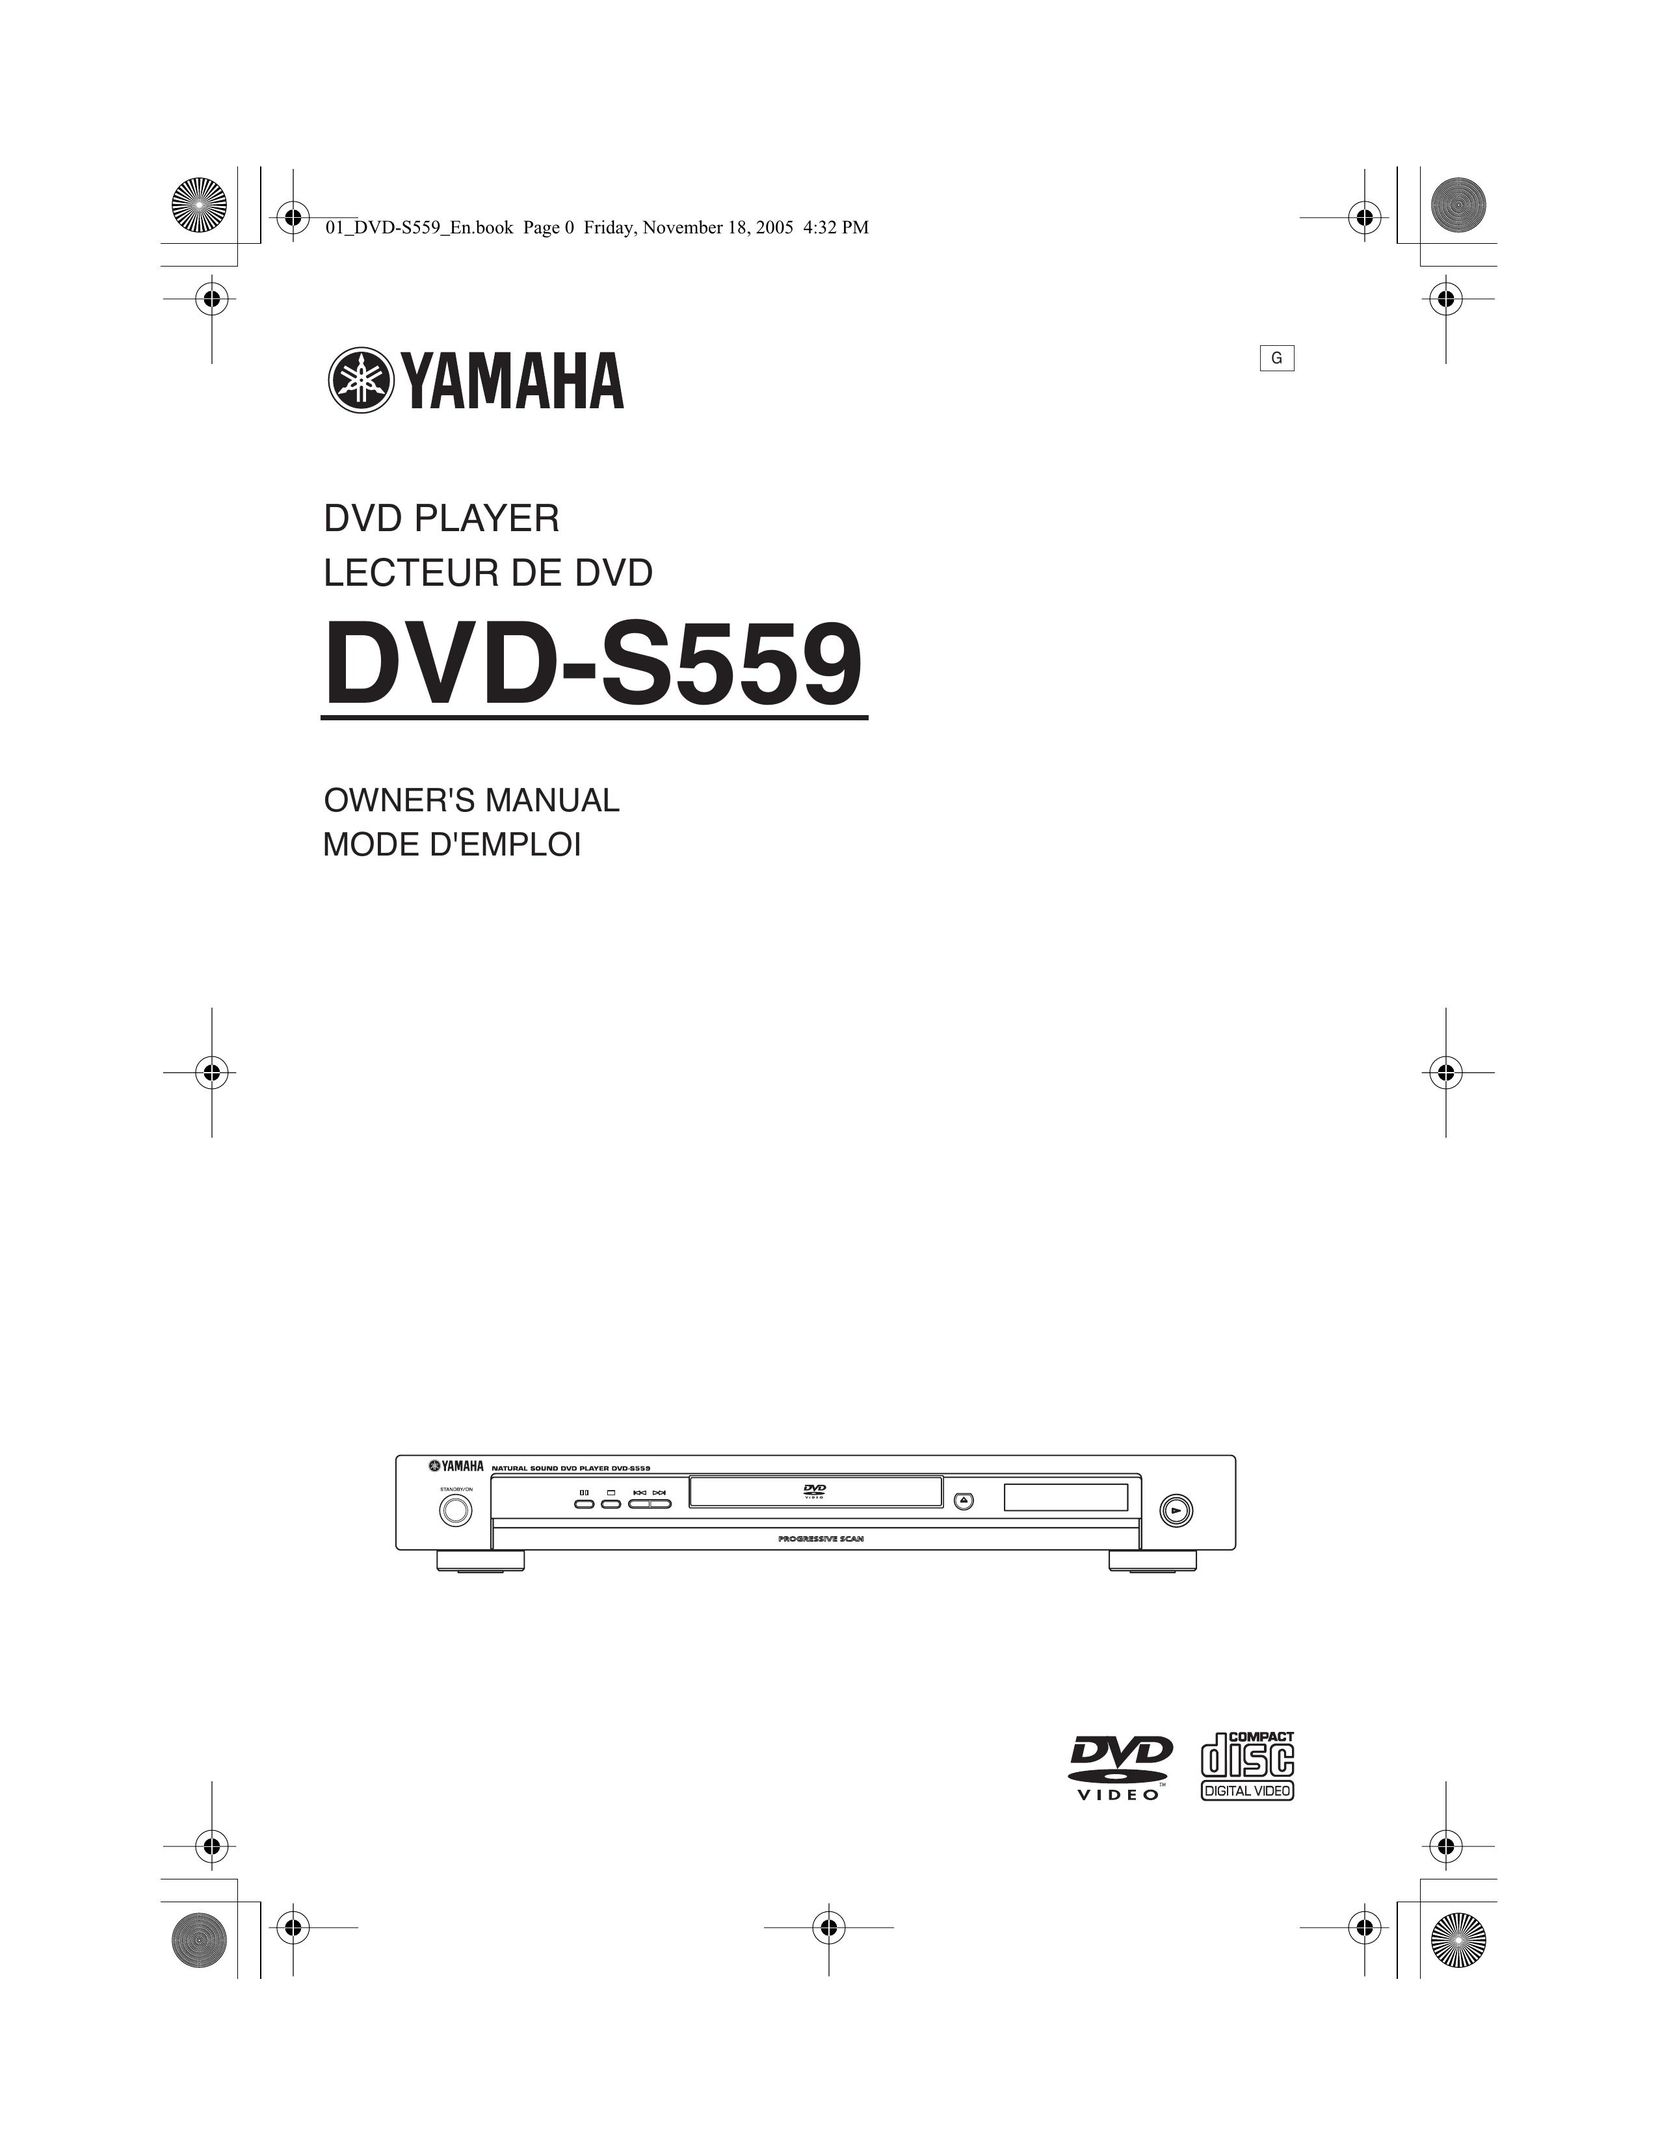 Yamaha DVD-S559 DVD Player User Manual